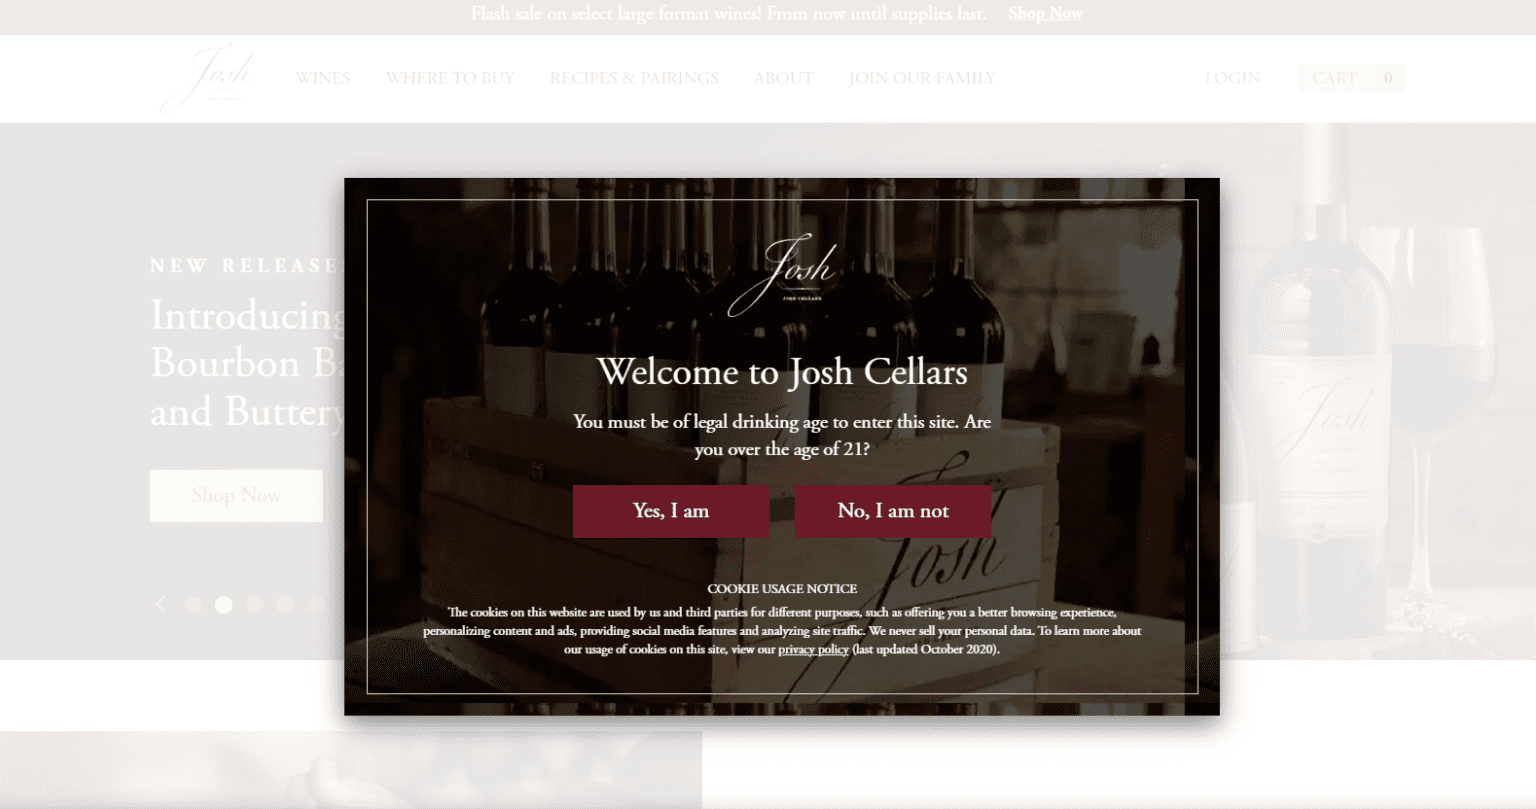 josh-cellars-wine-rebate-form-by-mail-printable-rebate-form